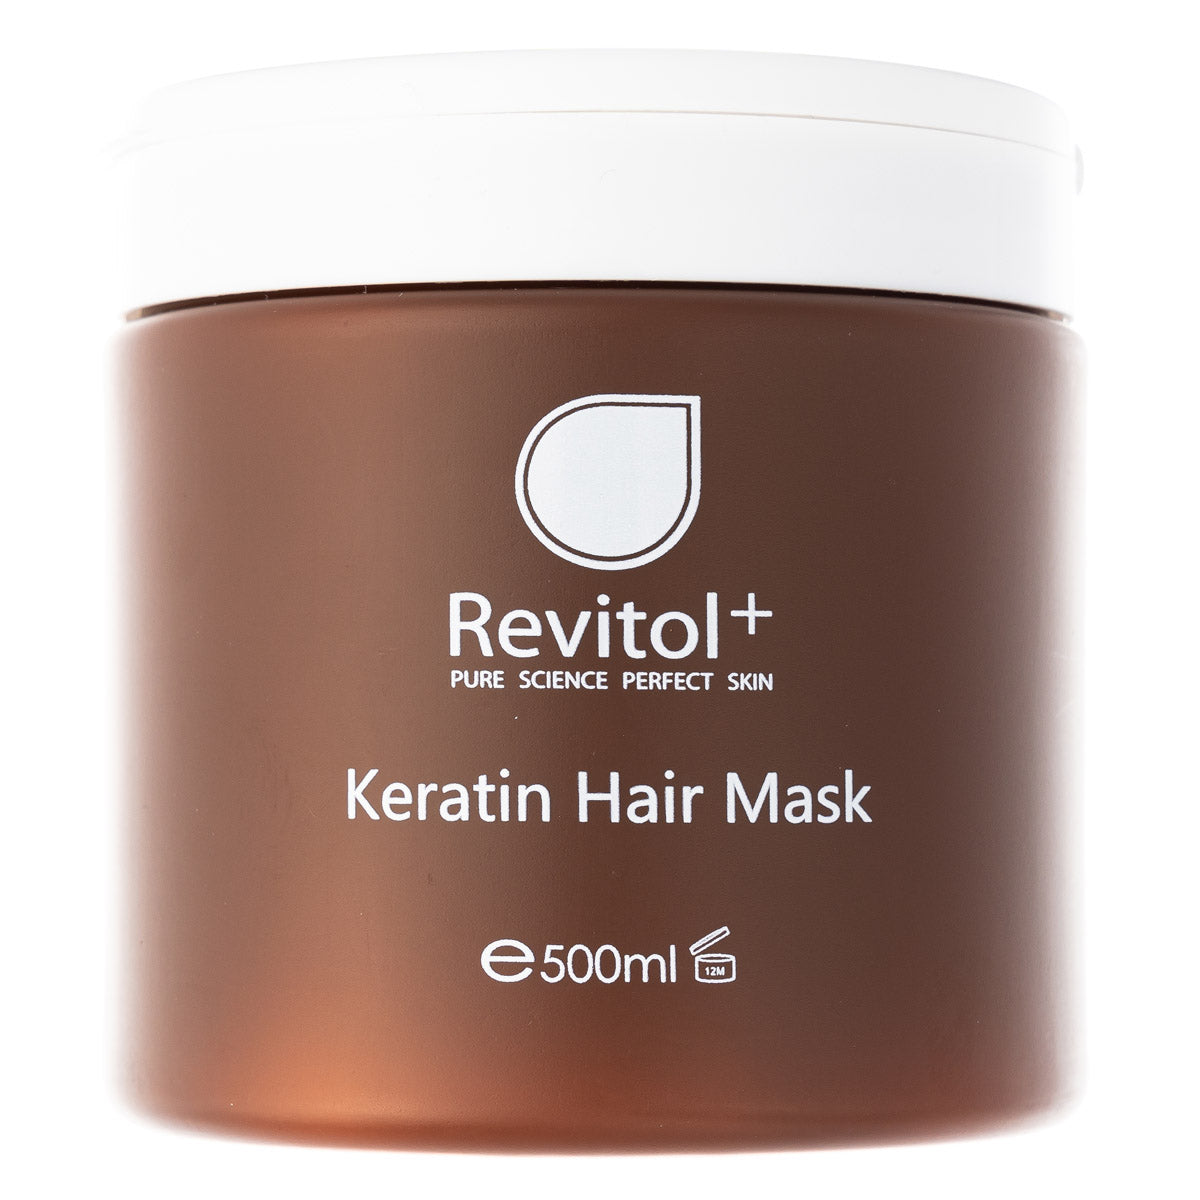 REVITOL KERATIN HAIR MASK 500M (REKHM)